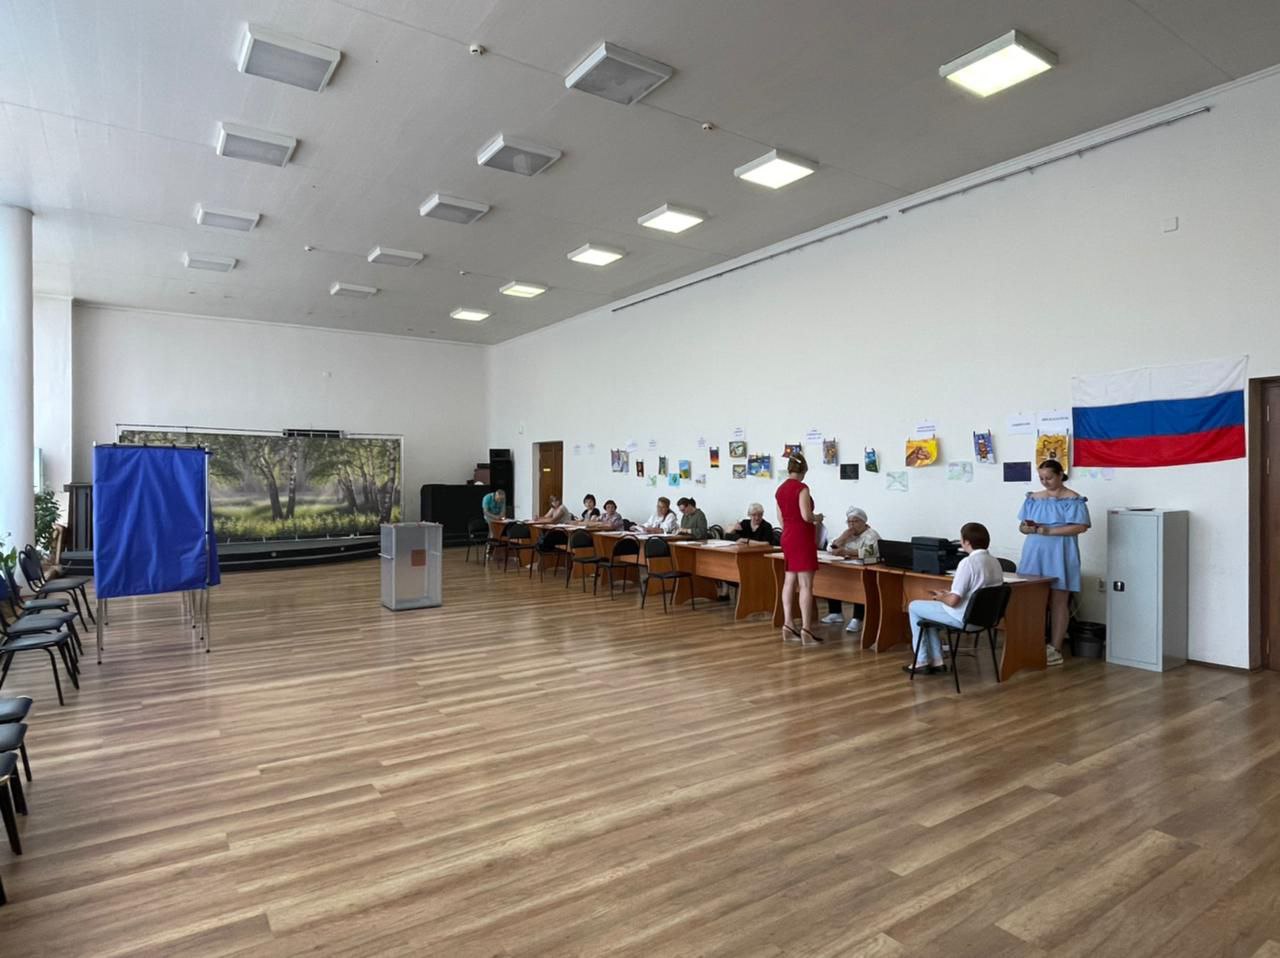 Мониторинговая группа Штаба общественного наблюдения осуществляет контроль за выборами в Ярославской области